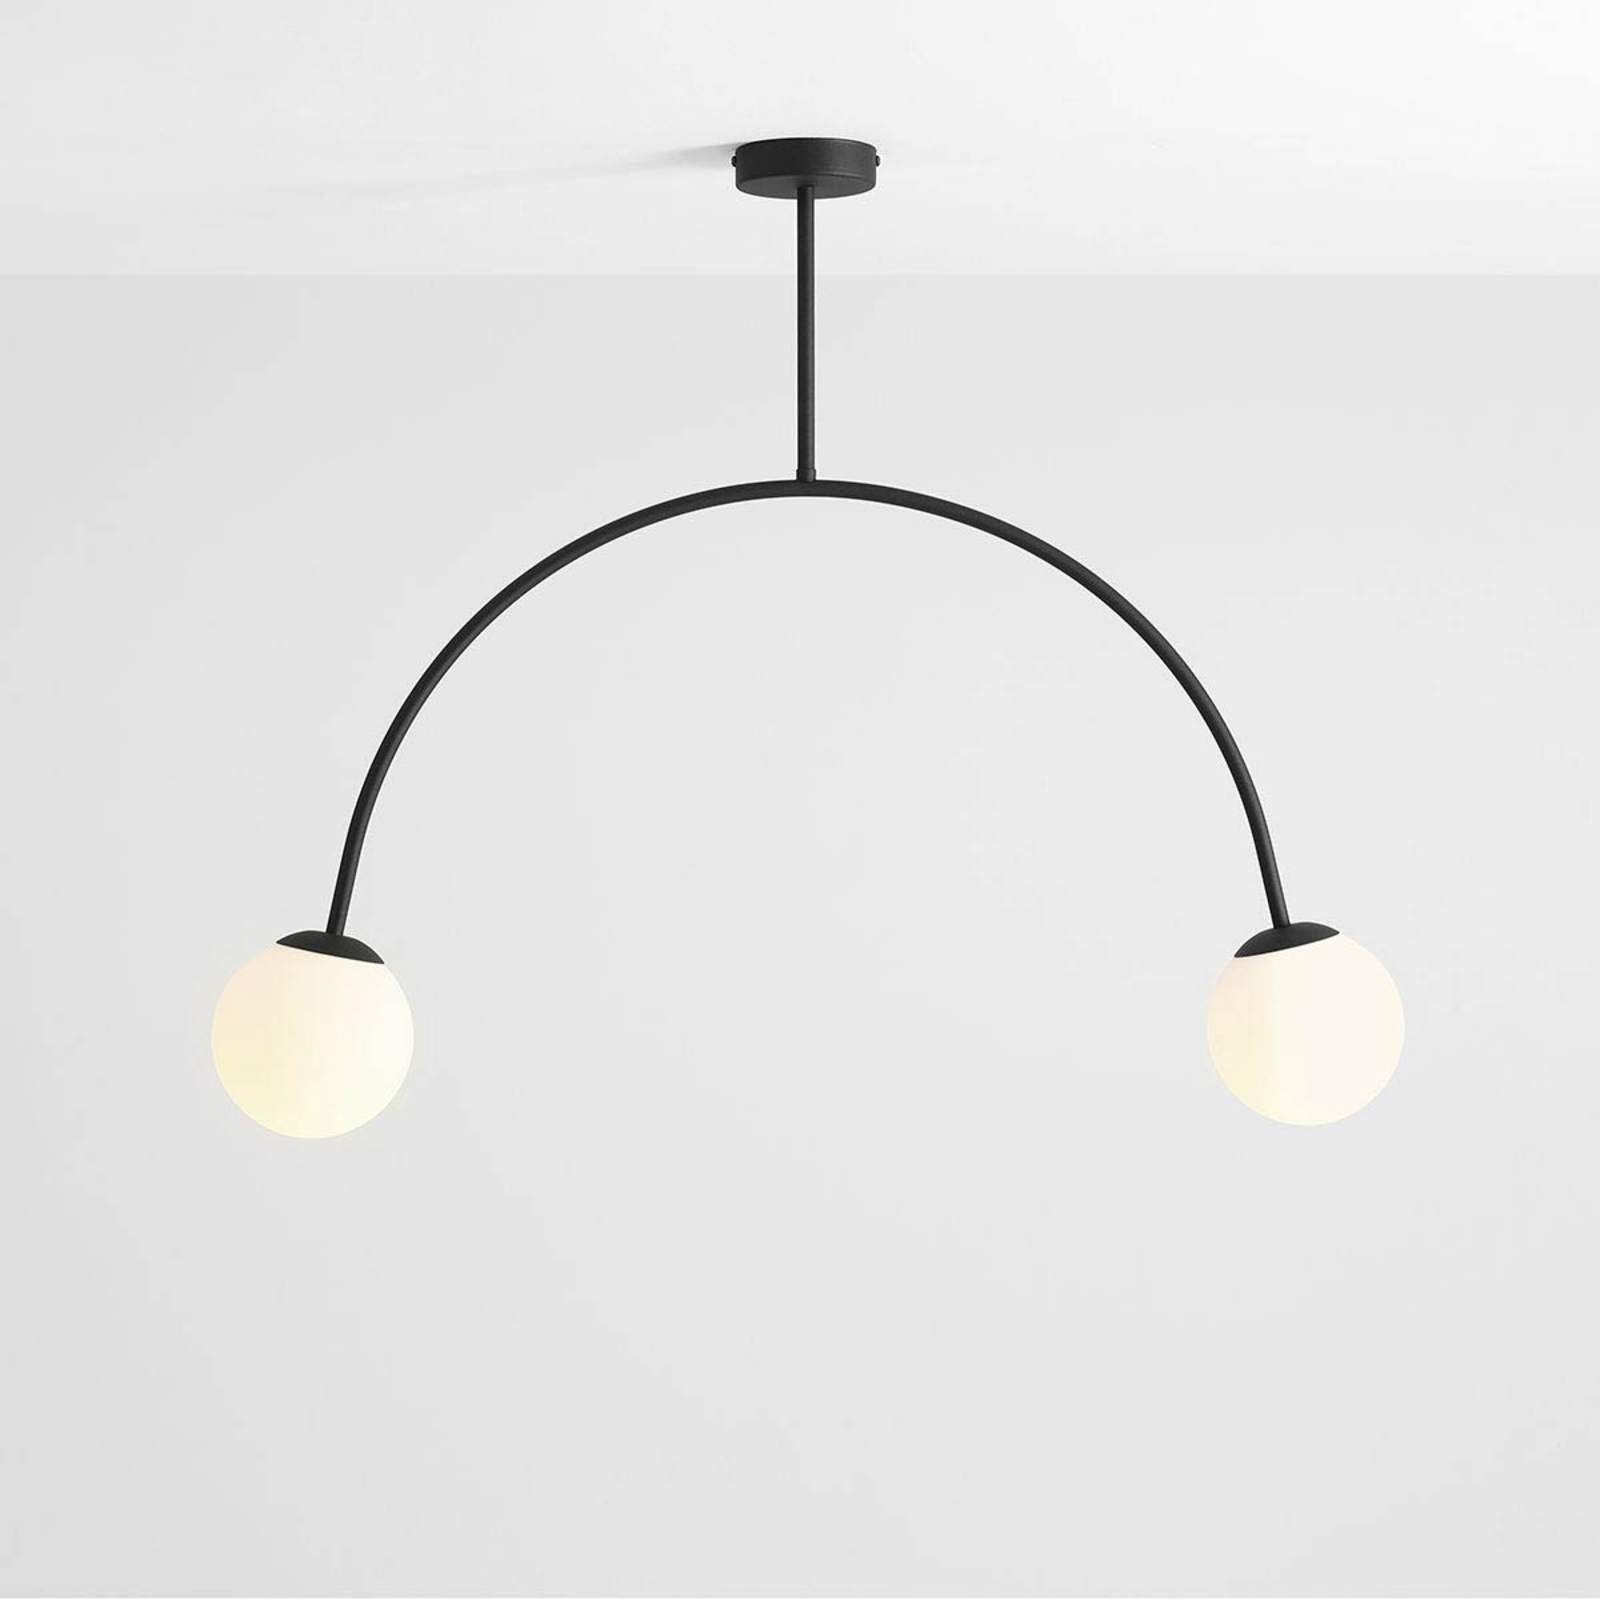 Deckenlampe Alison, schwarz/weiß, 2-flammig, 84 cm